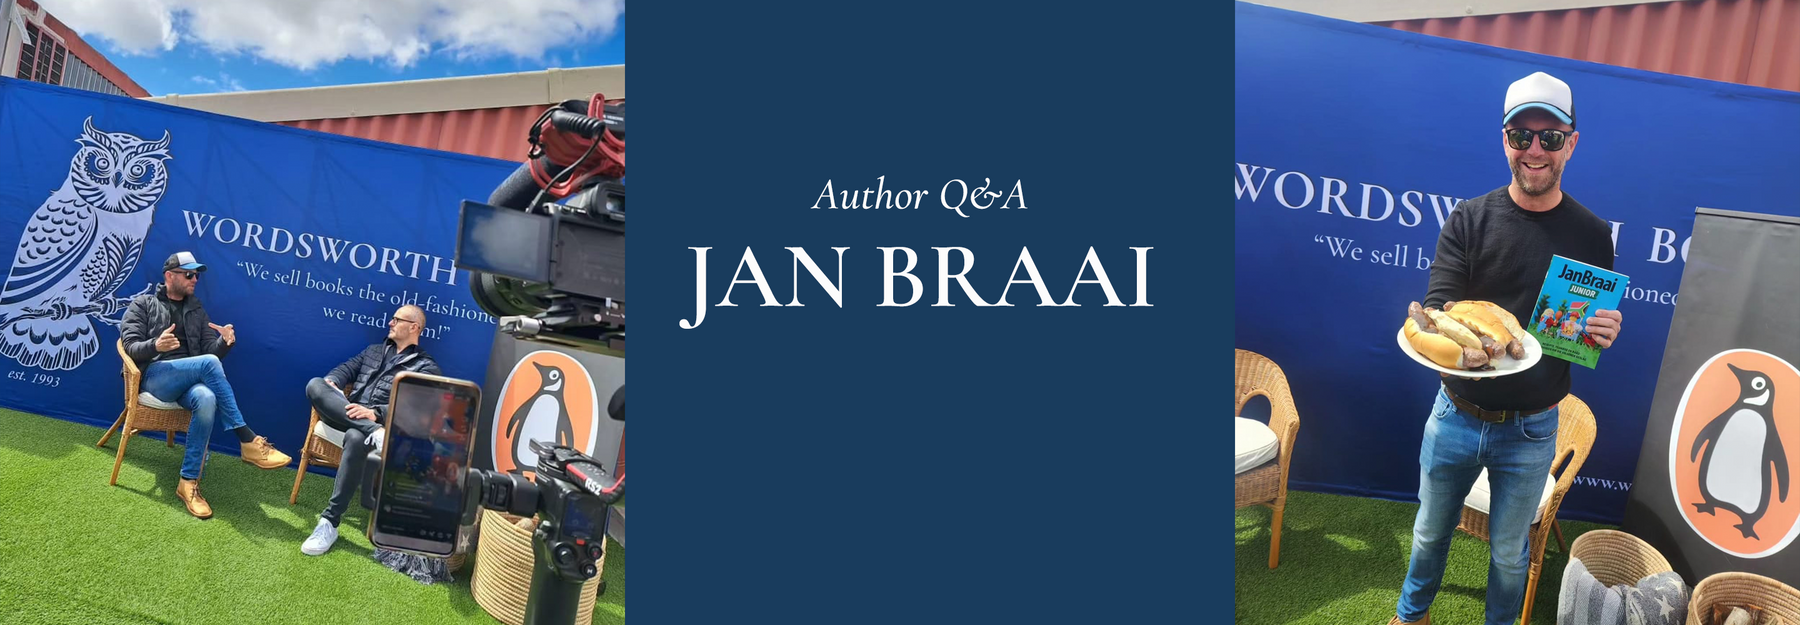 Jan Braai Q&A - Meet the Man behind the Books!